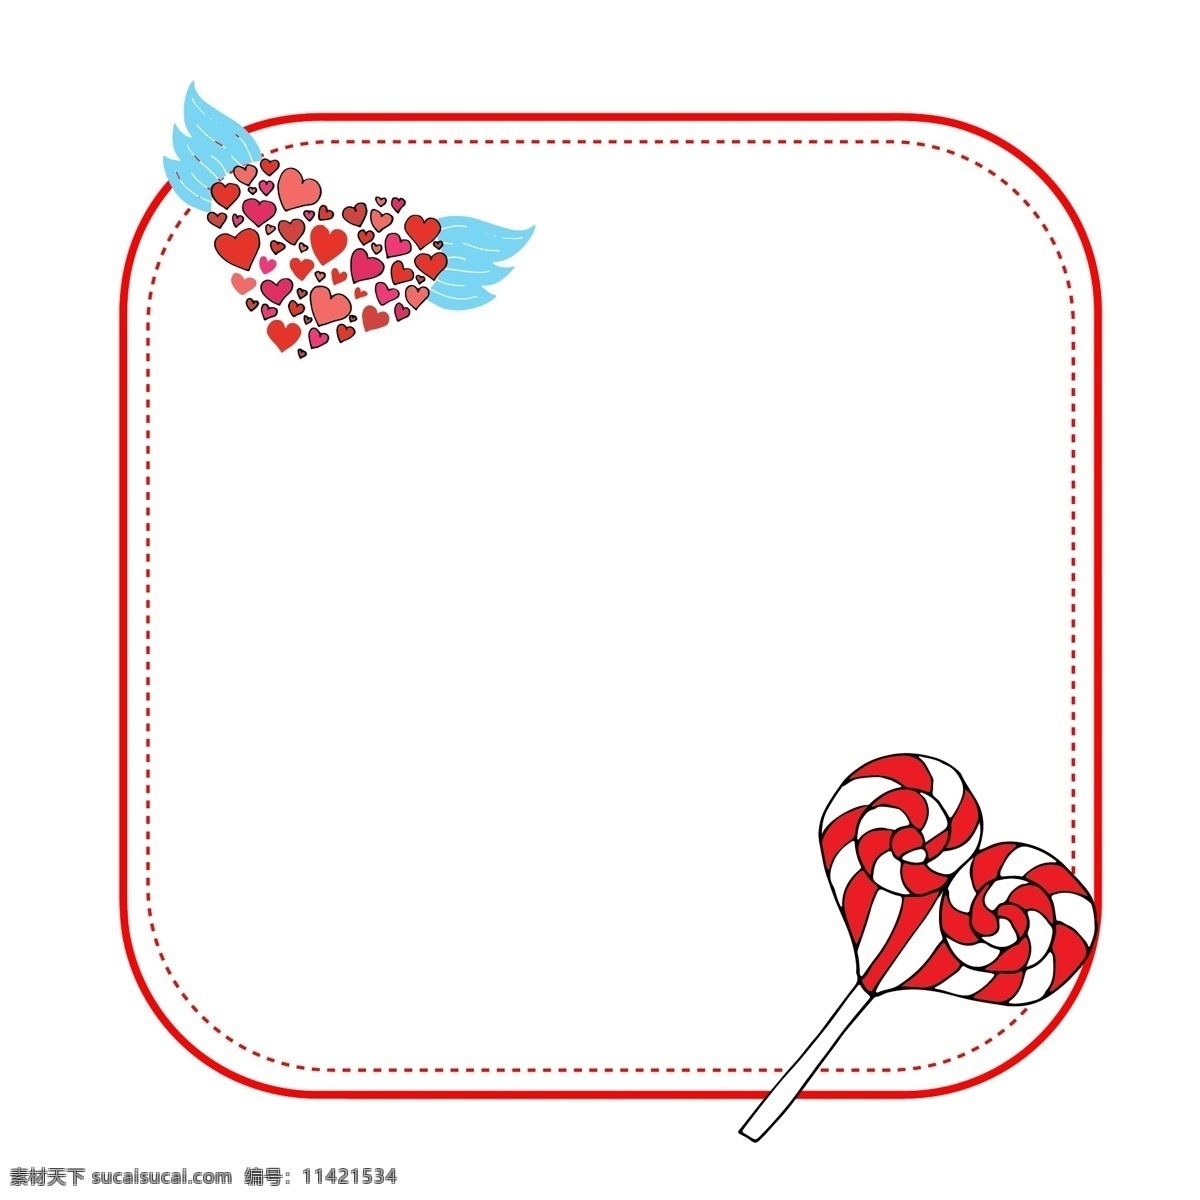 手绘 爱情 棒棒糖 边框 美味的棒棒糖 甜甜的棒棒糖 漂亮的边框 卡通边框 手绘爱情边框 红色的棒棒糖